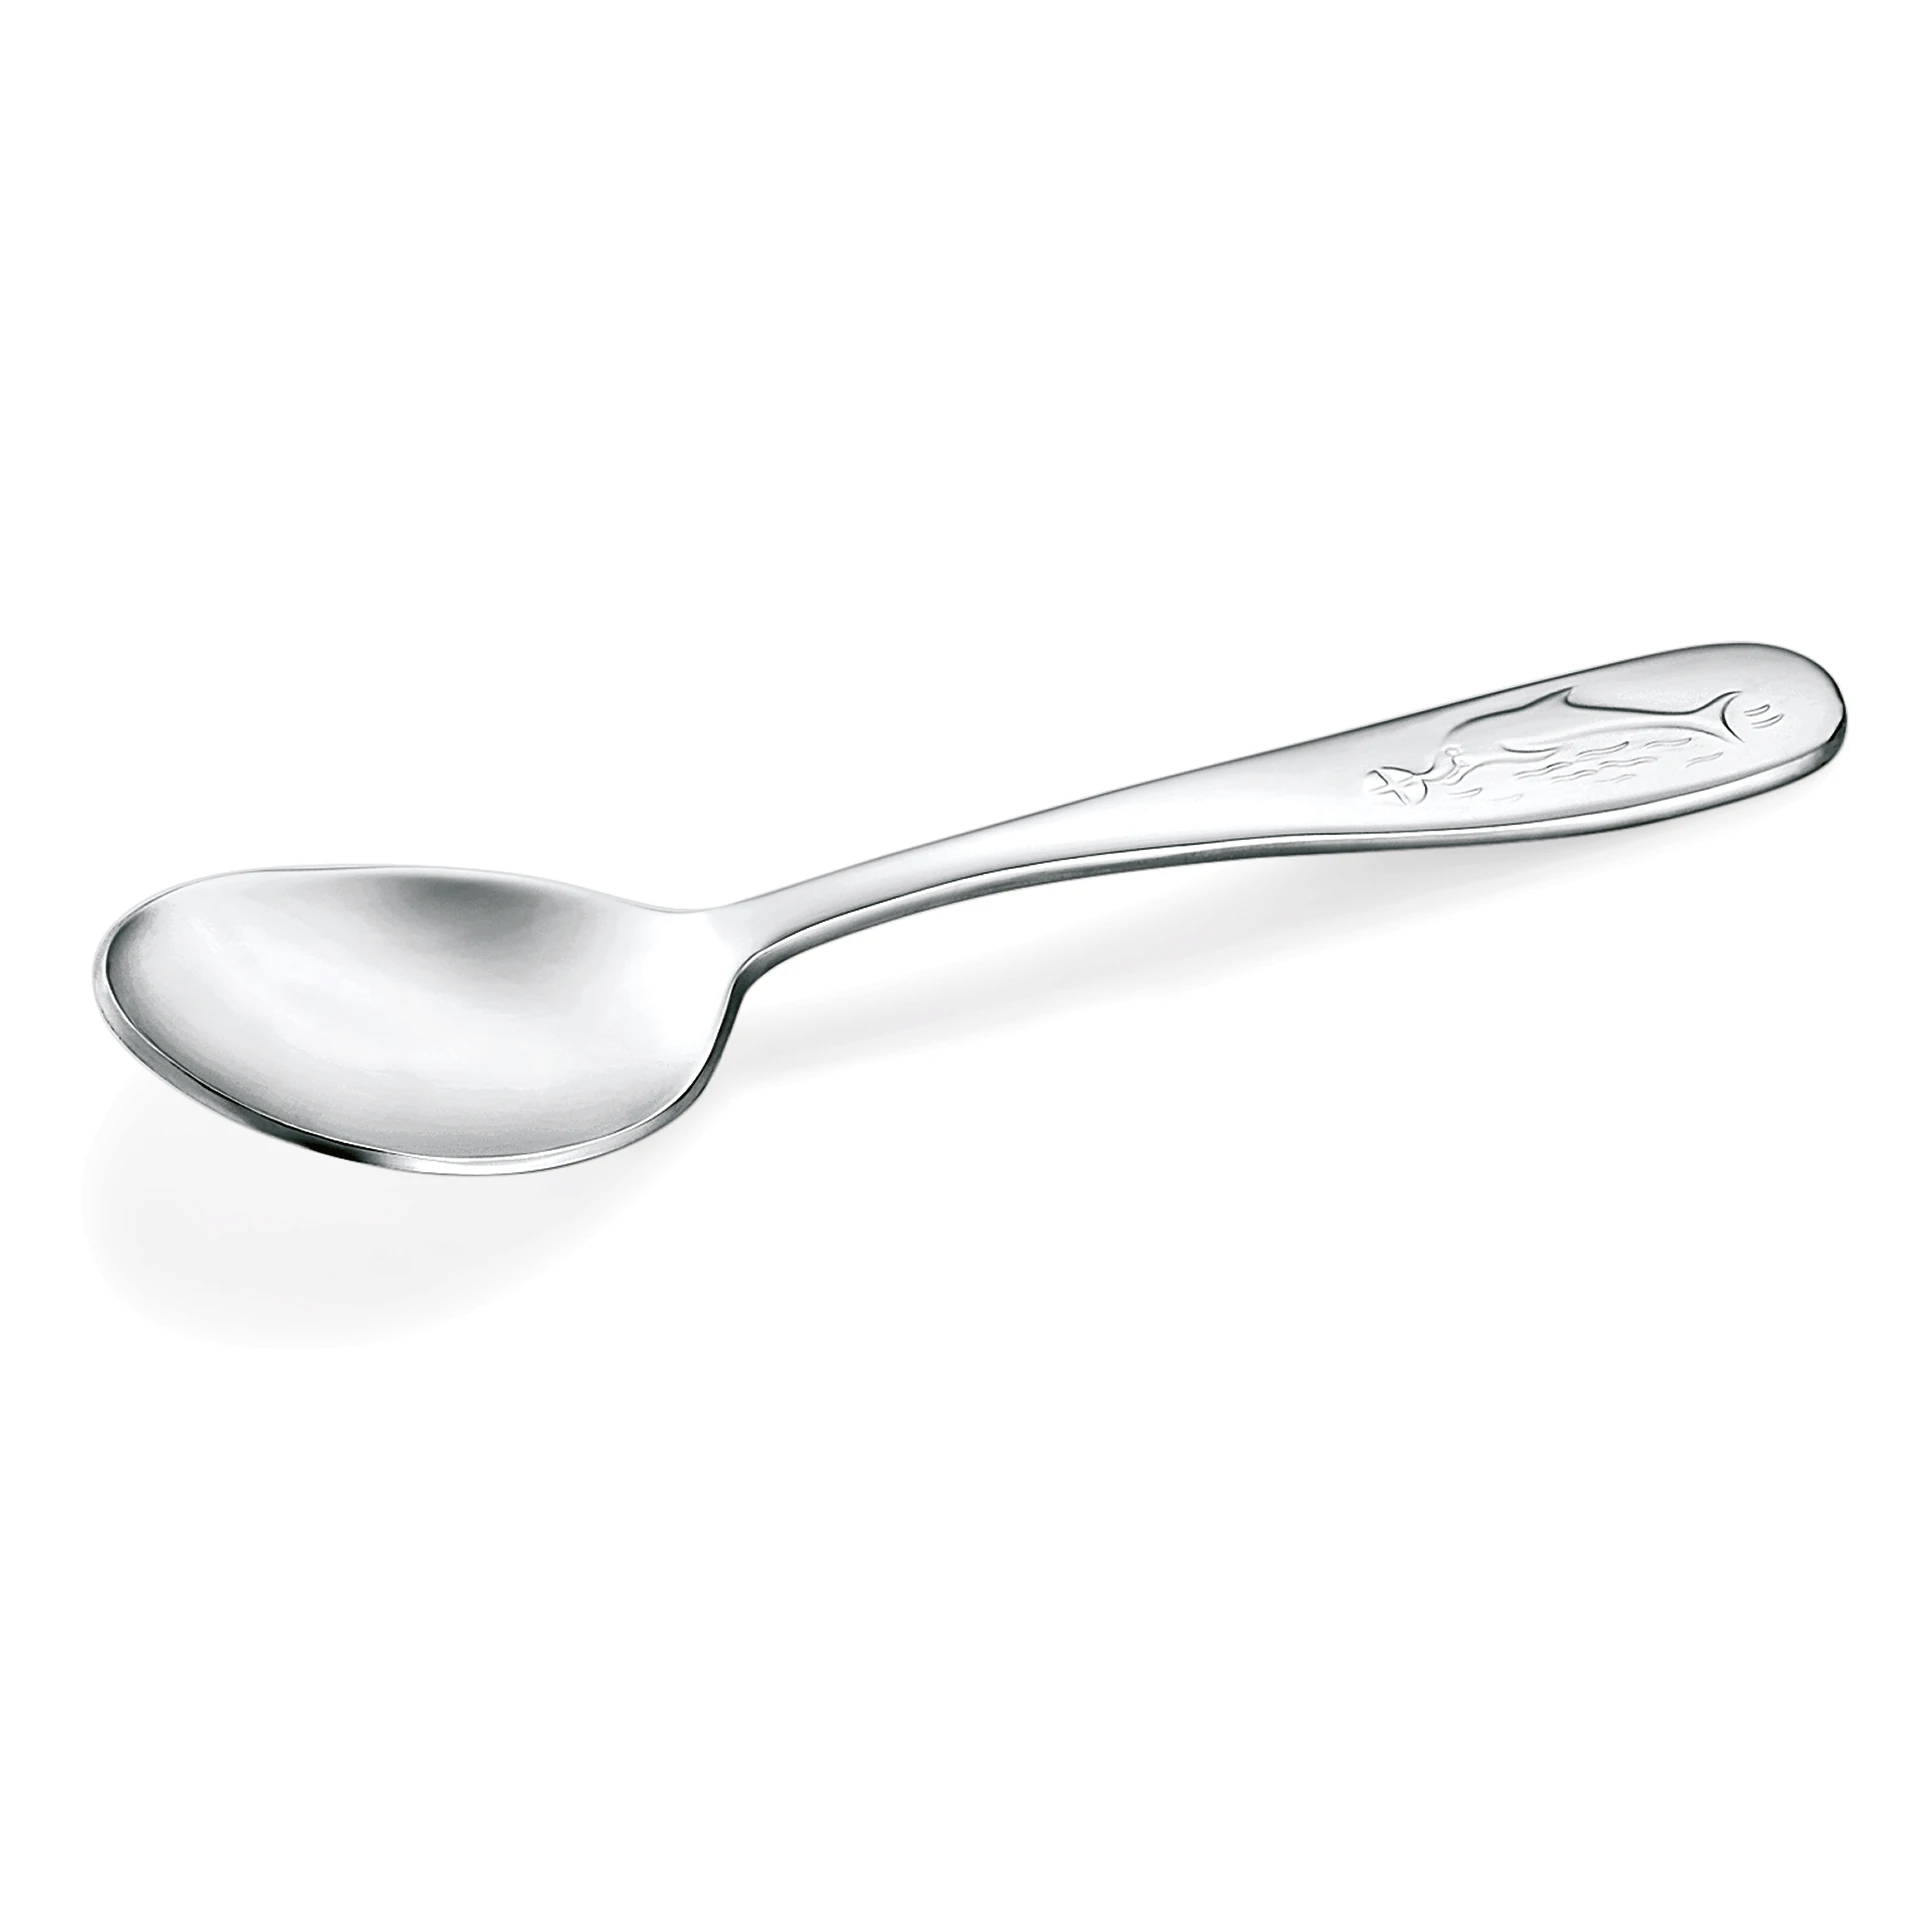 Spoon Marie